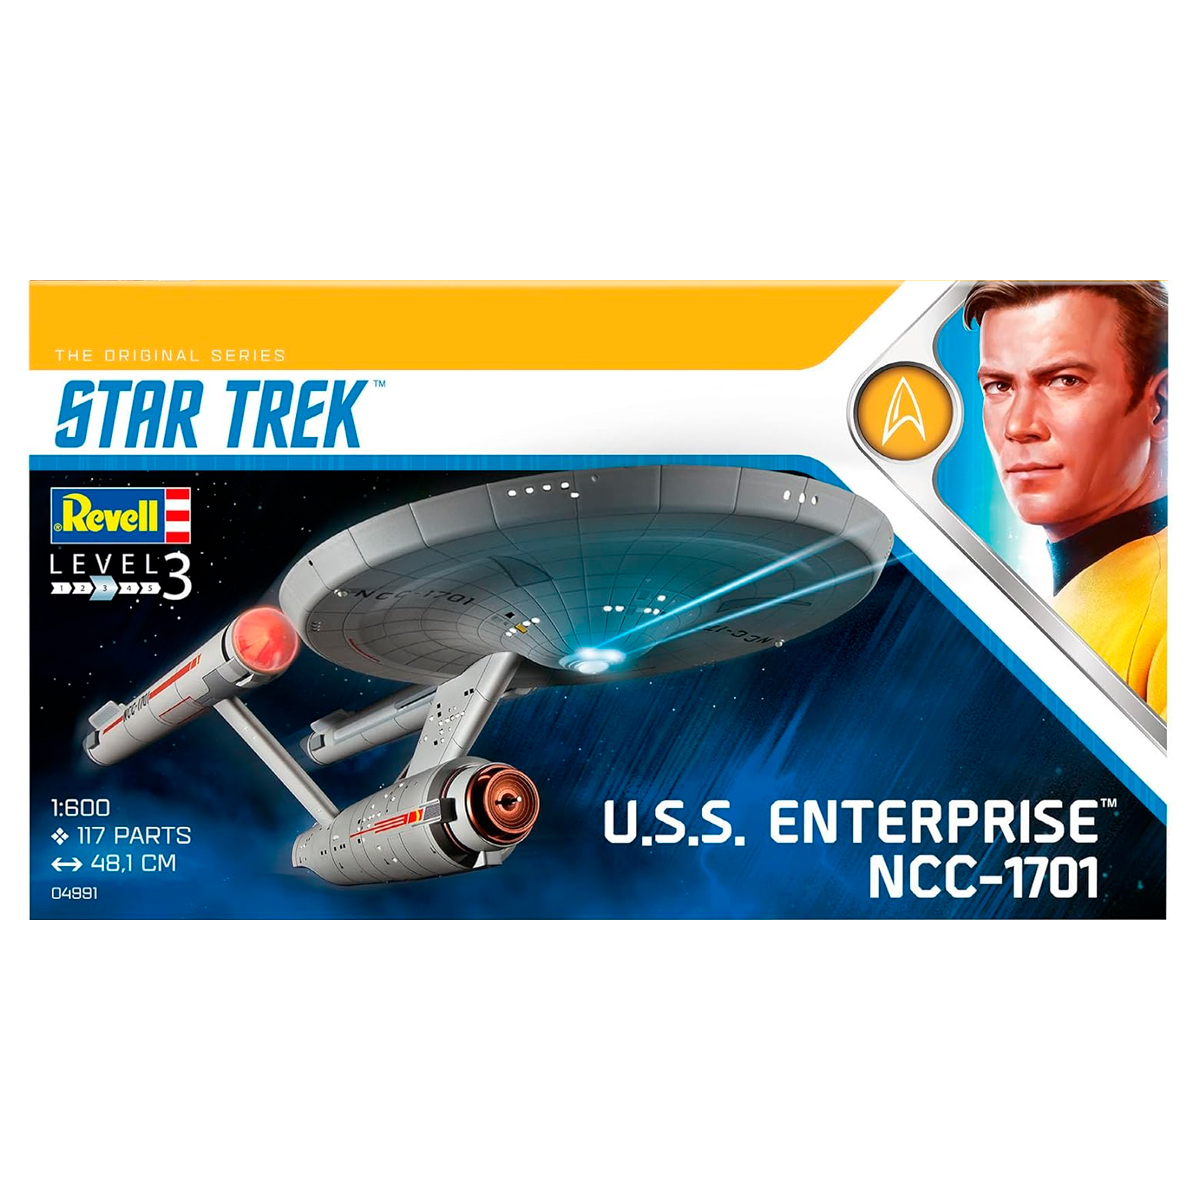 U.S.S. Enterprise NCC-1701 (TOS) 1/600